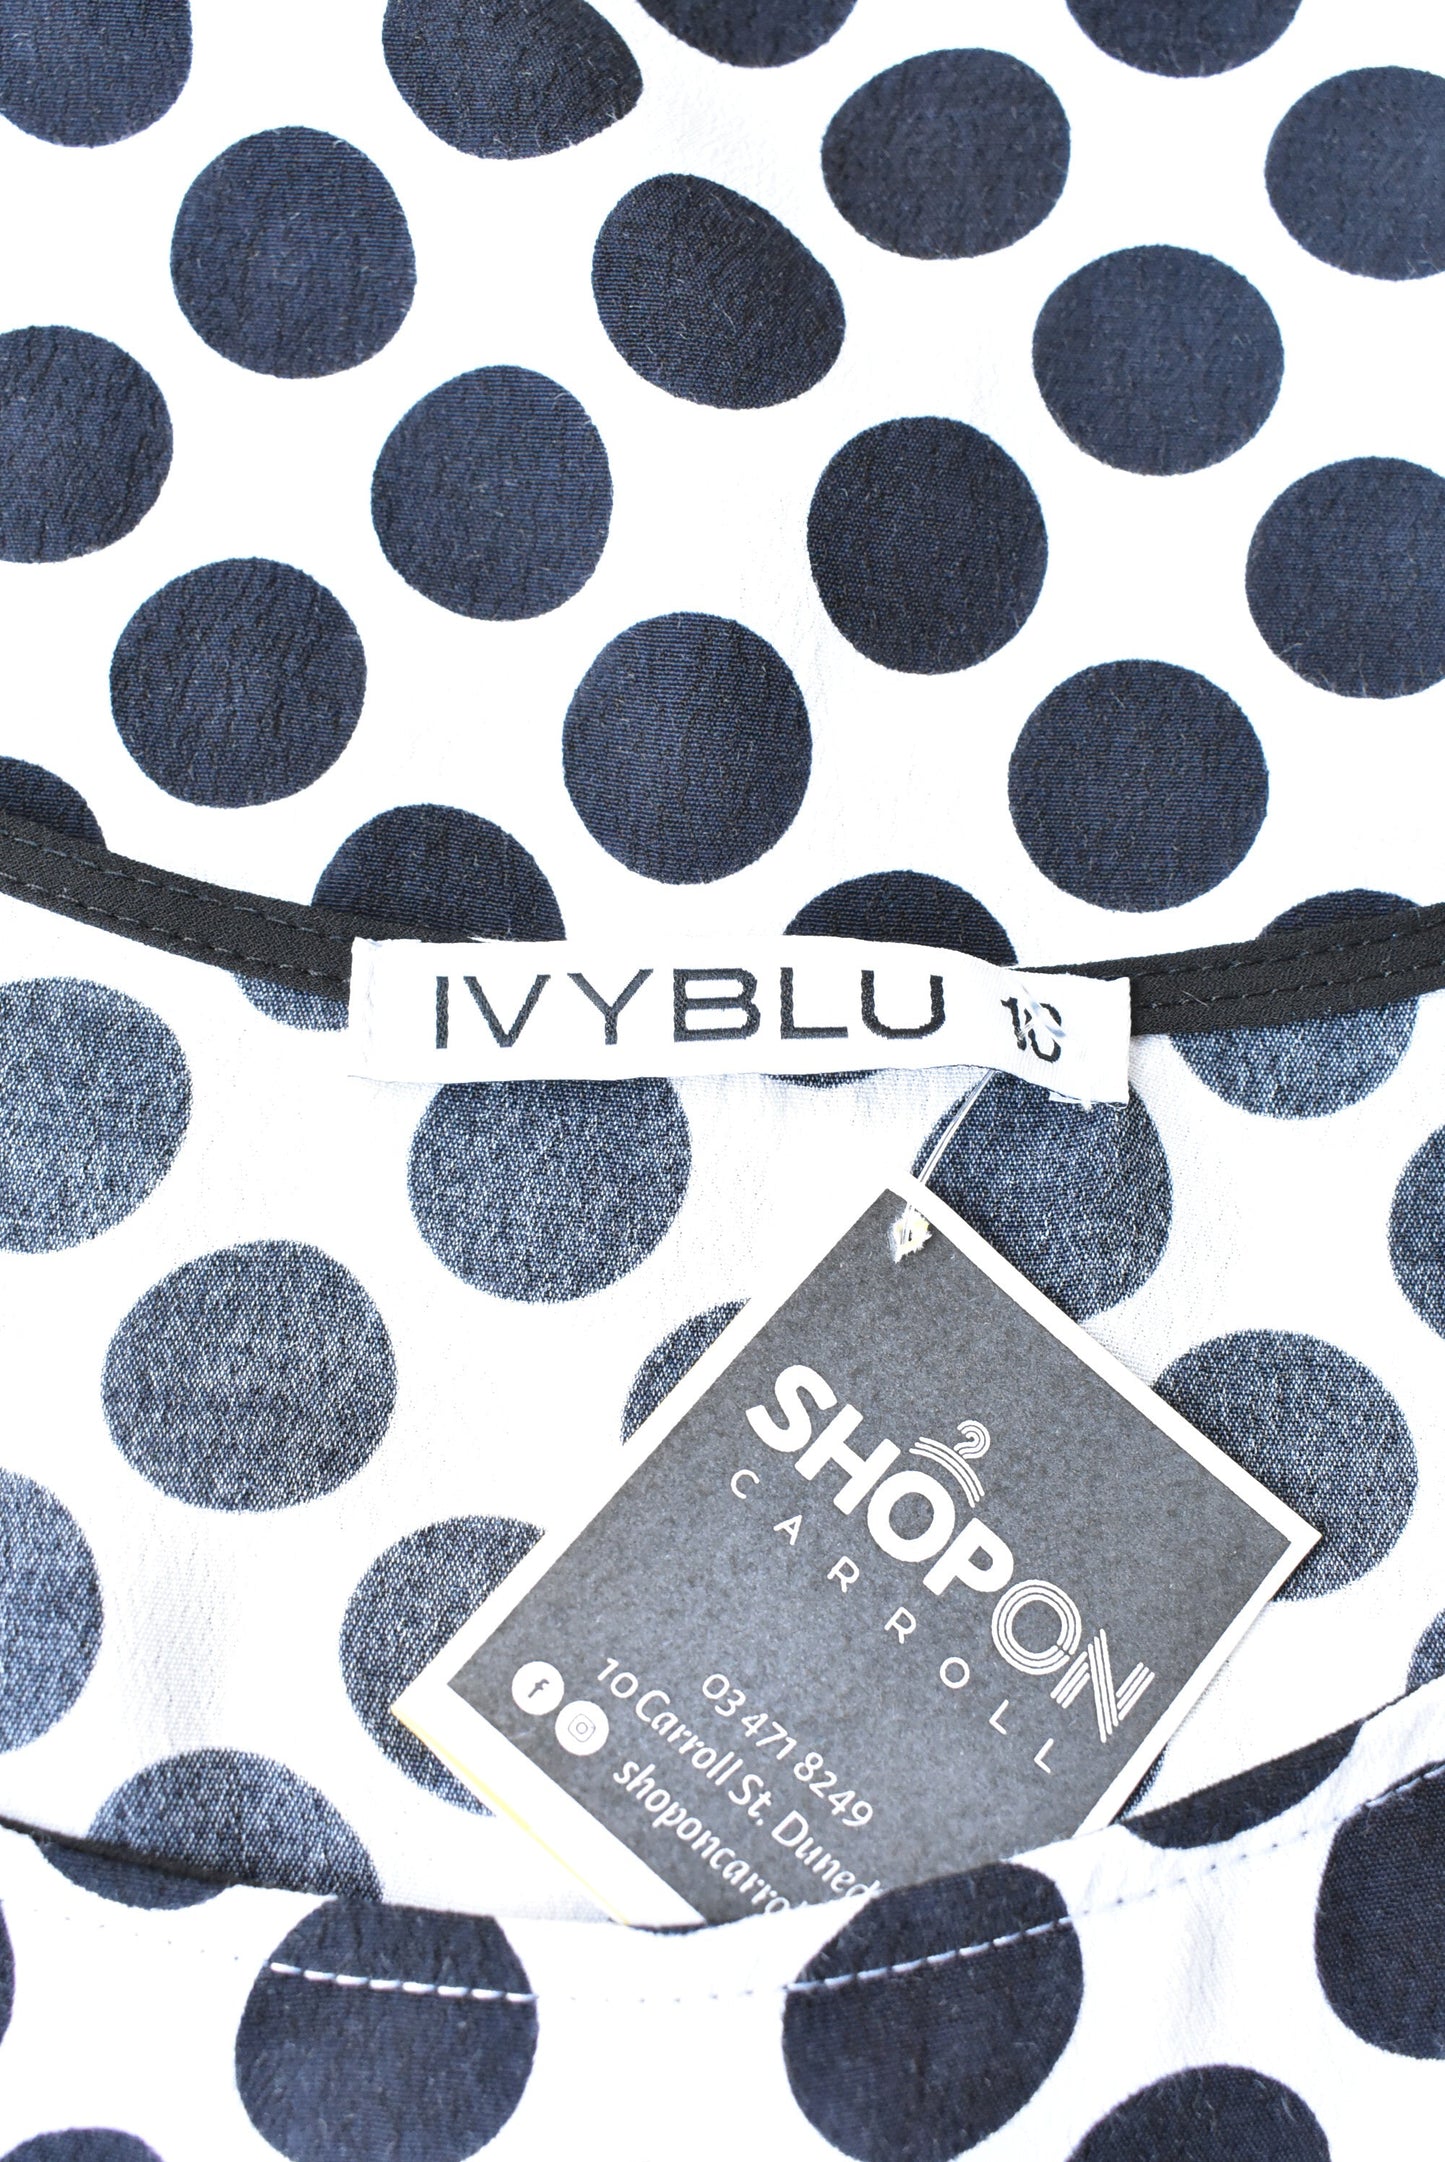 Ivyblu black & white polka dot dress, size S